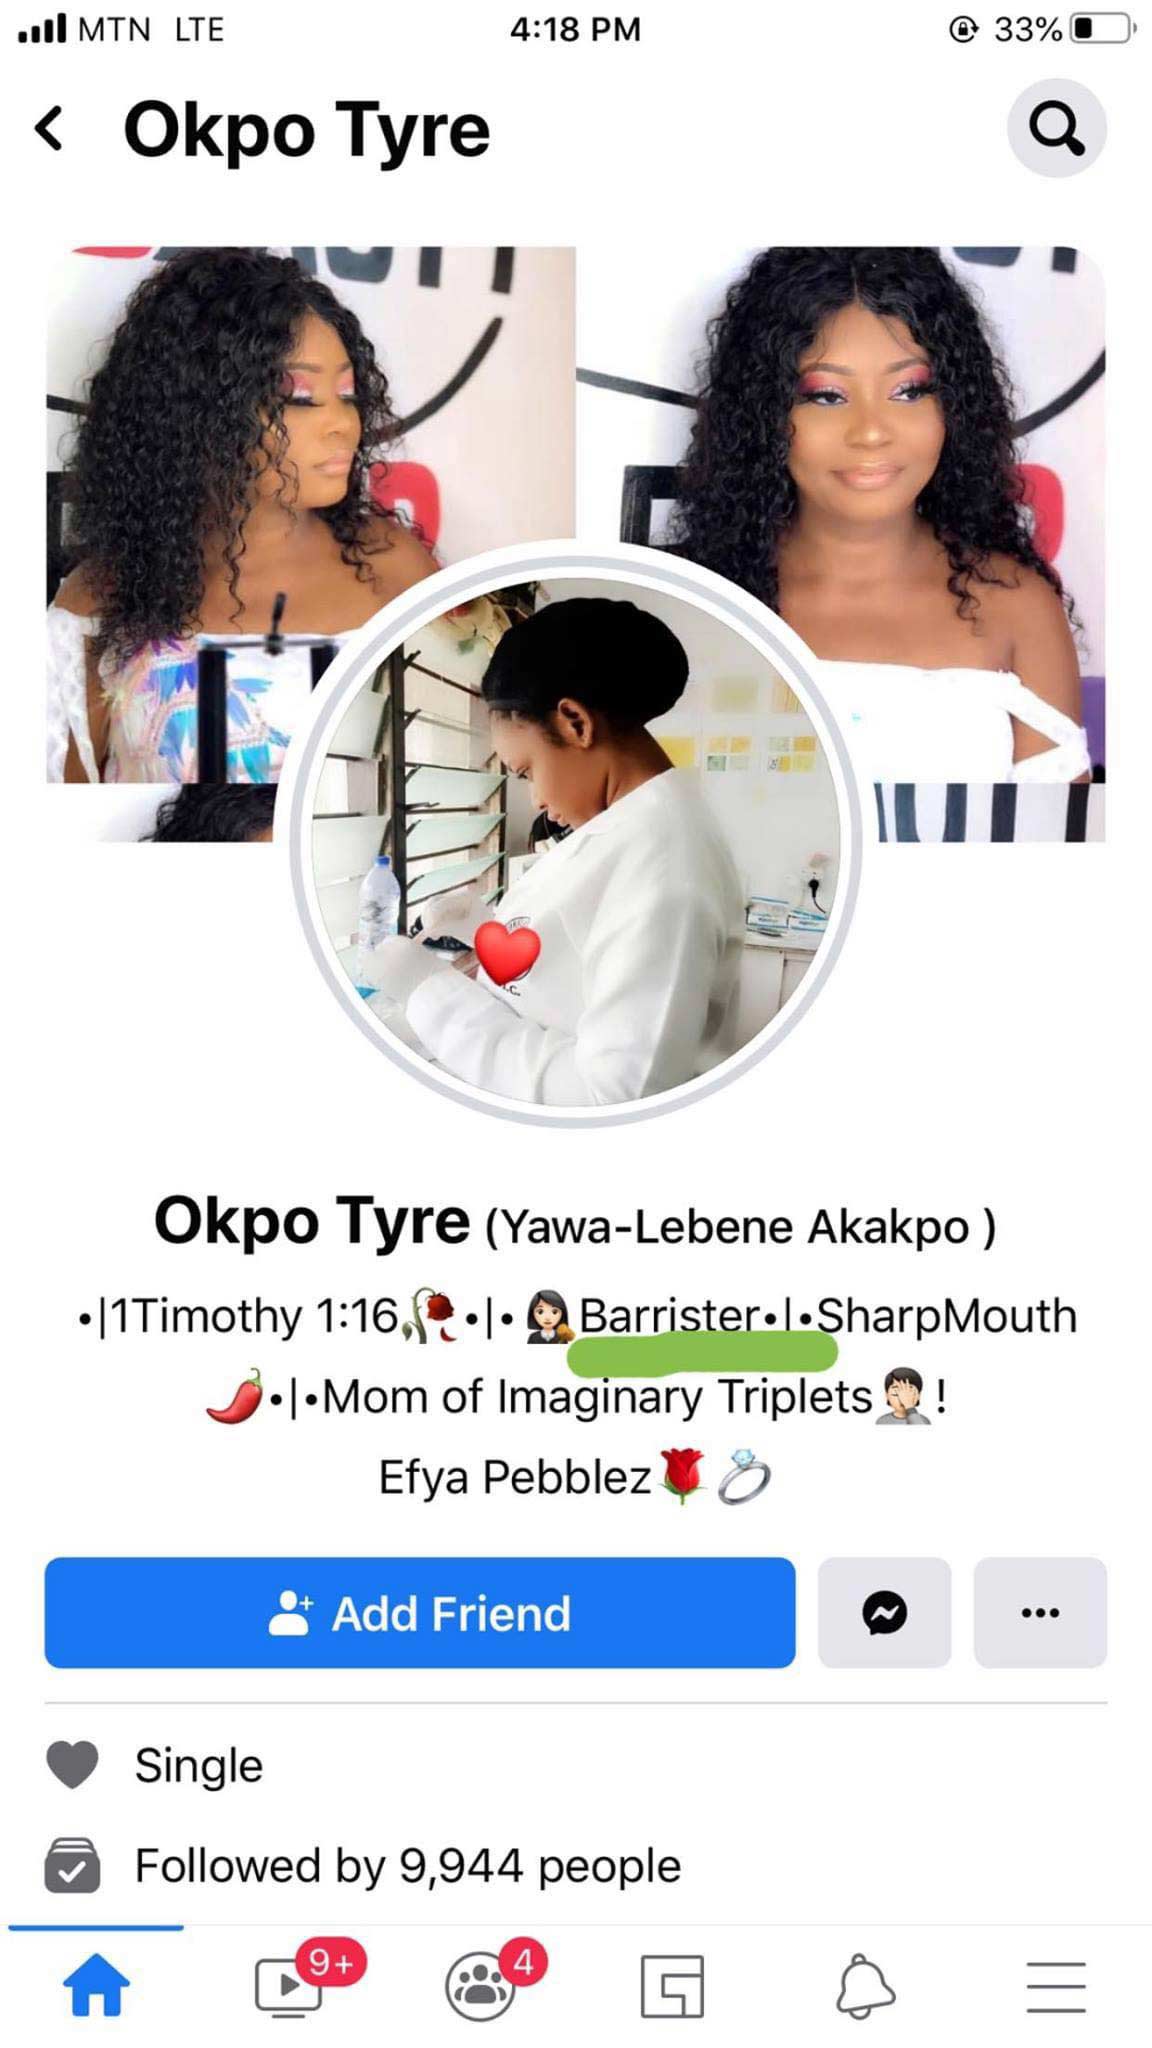 Okpo Tyre's Facebook profile 